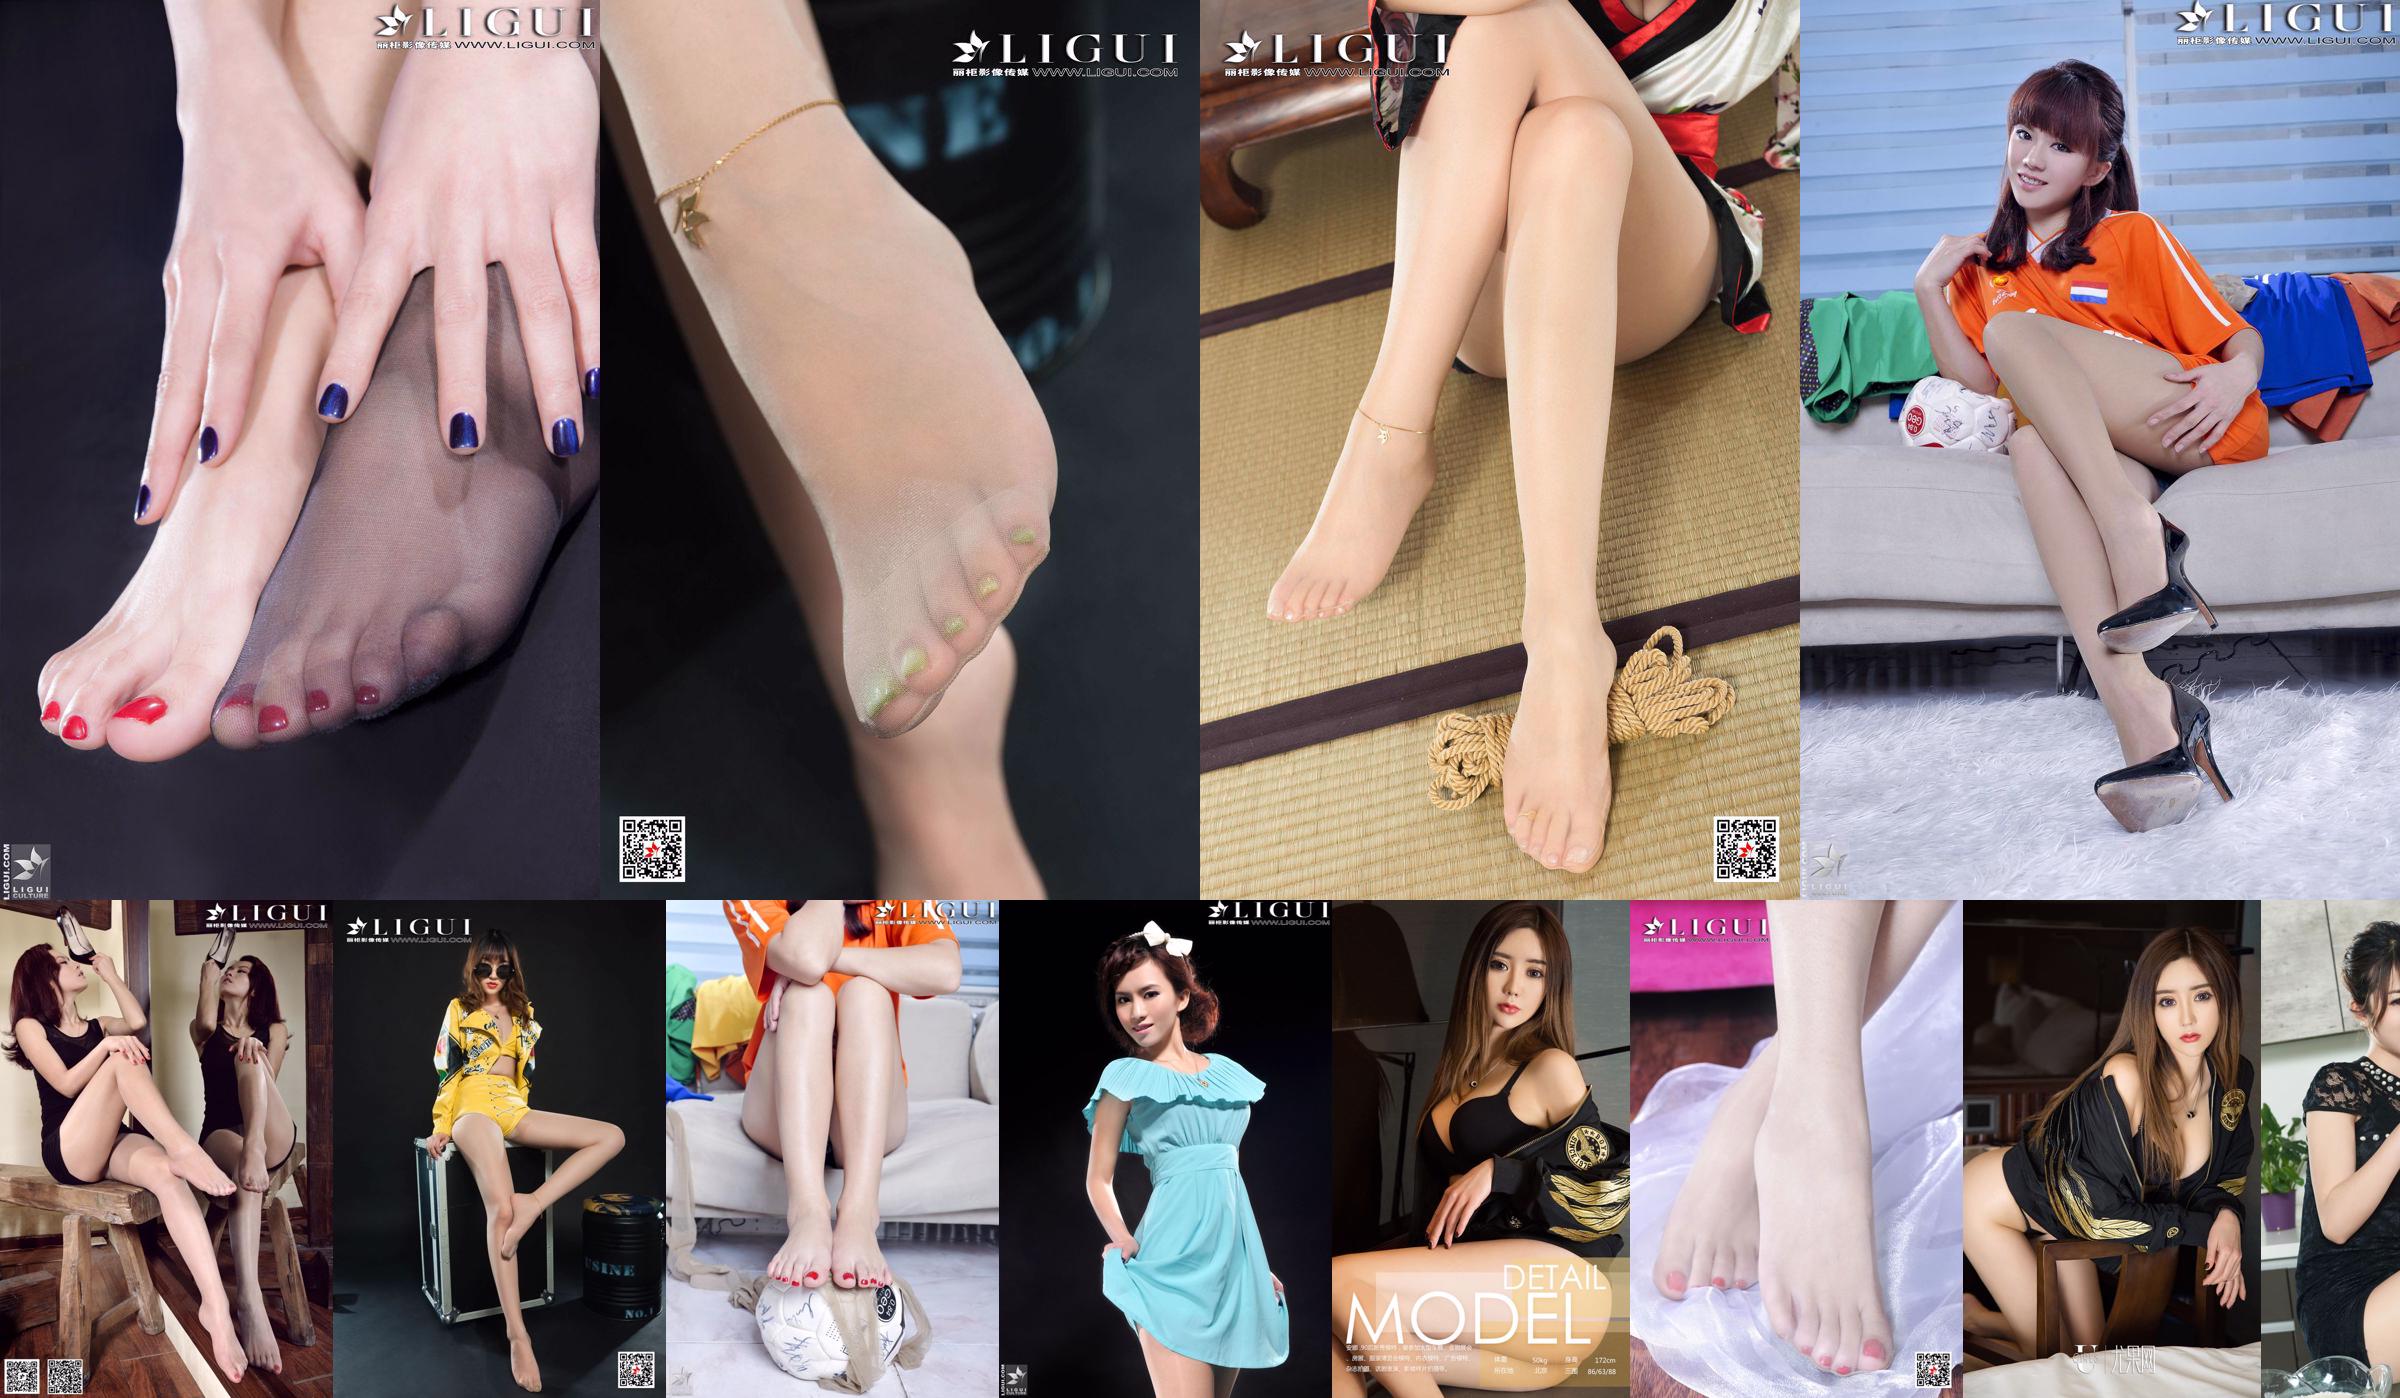 [丽 柜 LiGui] Foto della modella Anna "Piedi di seta di bellezza del cassiere" Belle gambe e piedi di giada No.172de5 Pagina 1